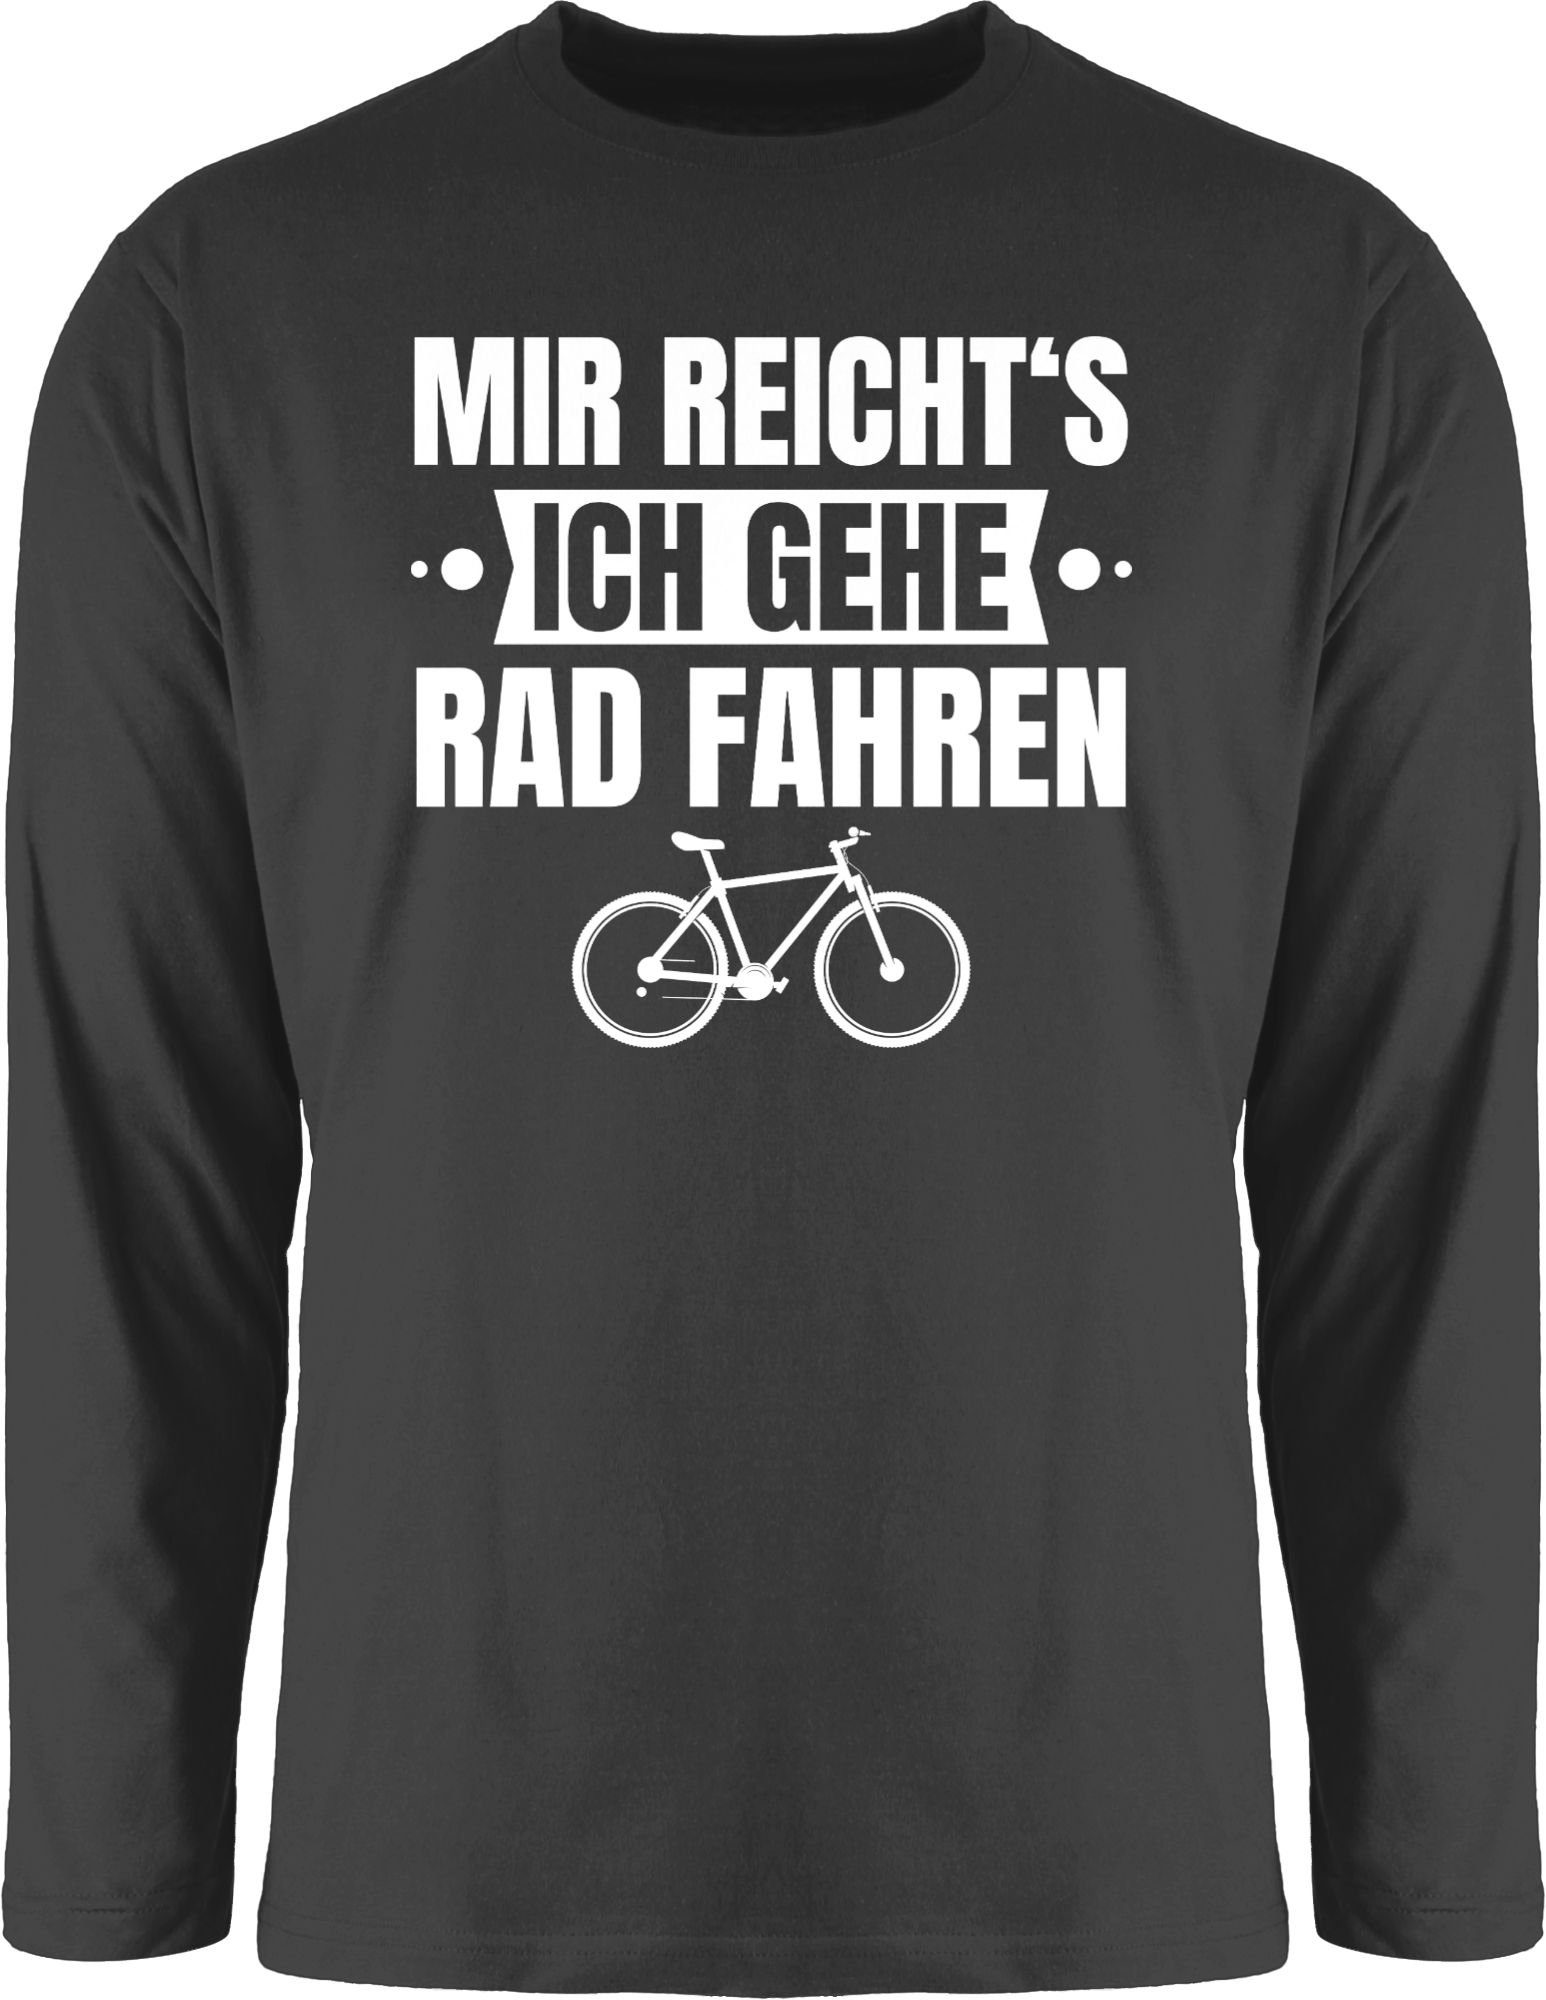 Banner Schwarz fahren Radsport 1 Shirtracer gehe ich Rundhalsshirt Bekleidung Rad Mir weiß - Fahrrad reicht's